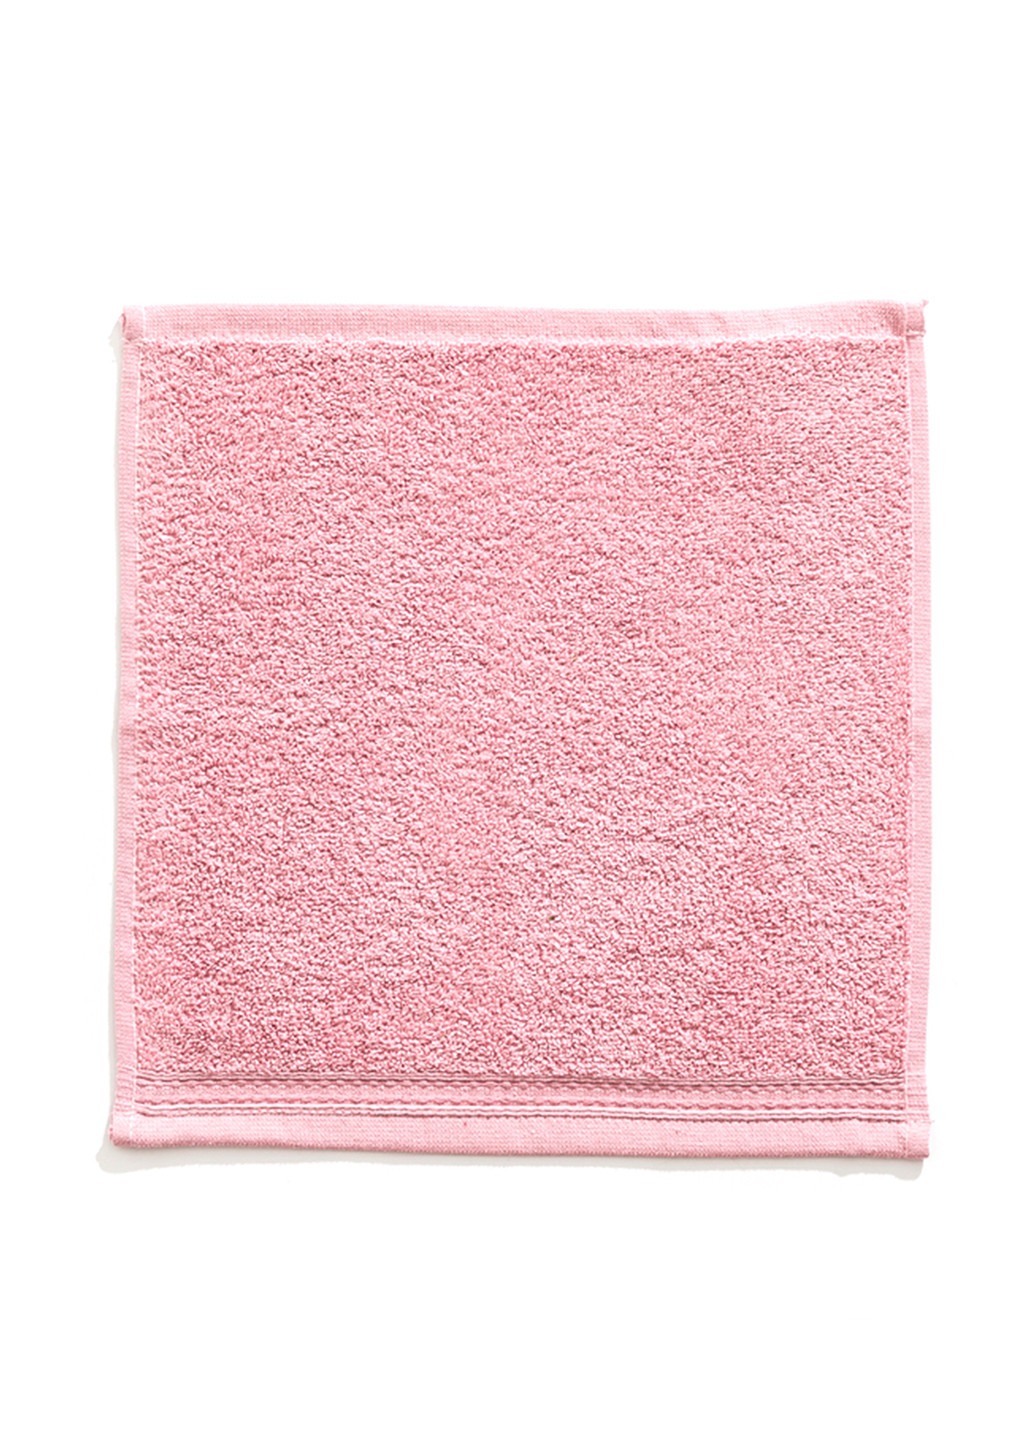 English Home полотенце, 30х30 см однотонный розовый производство - Турция